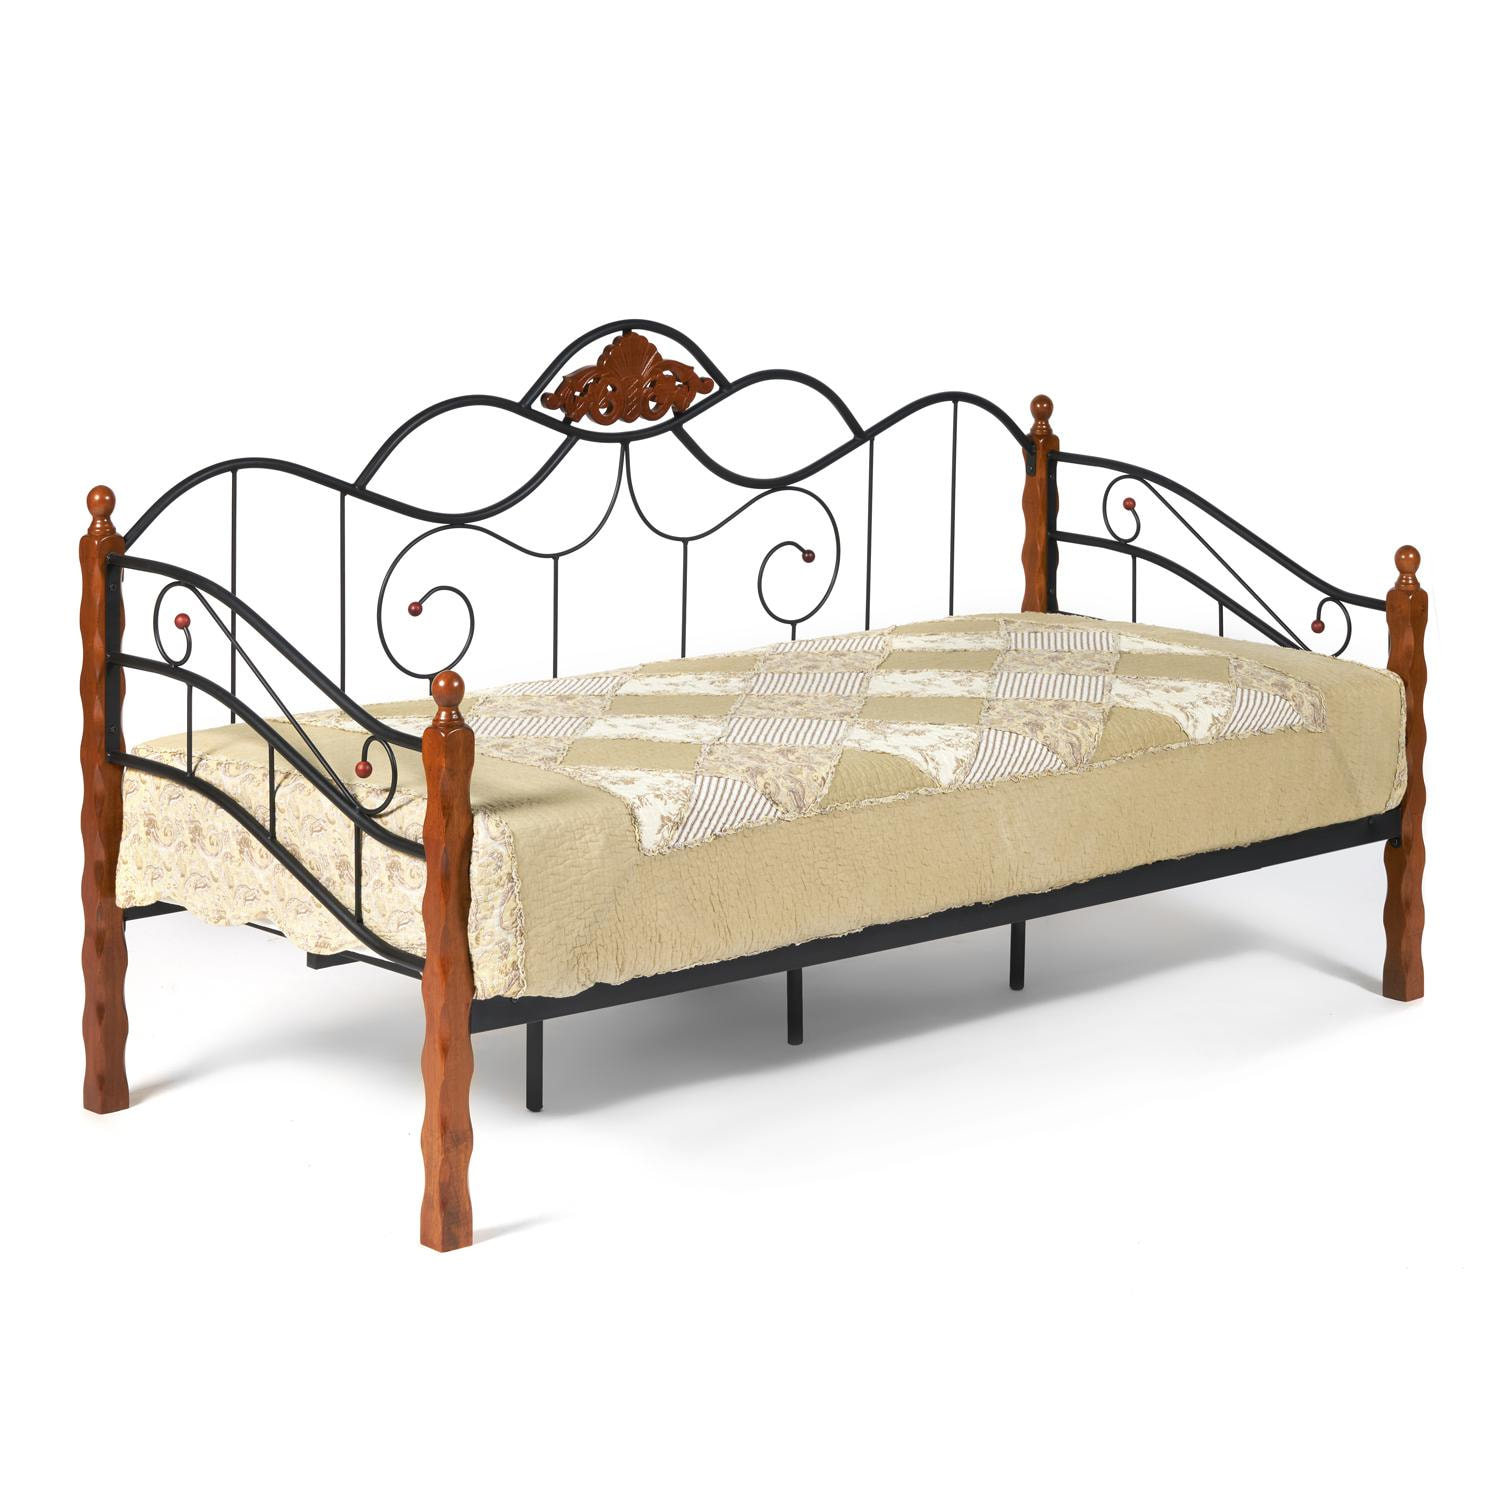 Кровать CANZONA Wood slat base дерево гевея/металл, 90*200 см (Day bed), красный дуб/черный